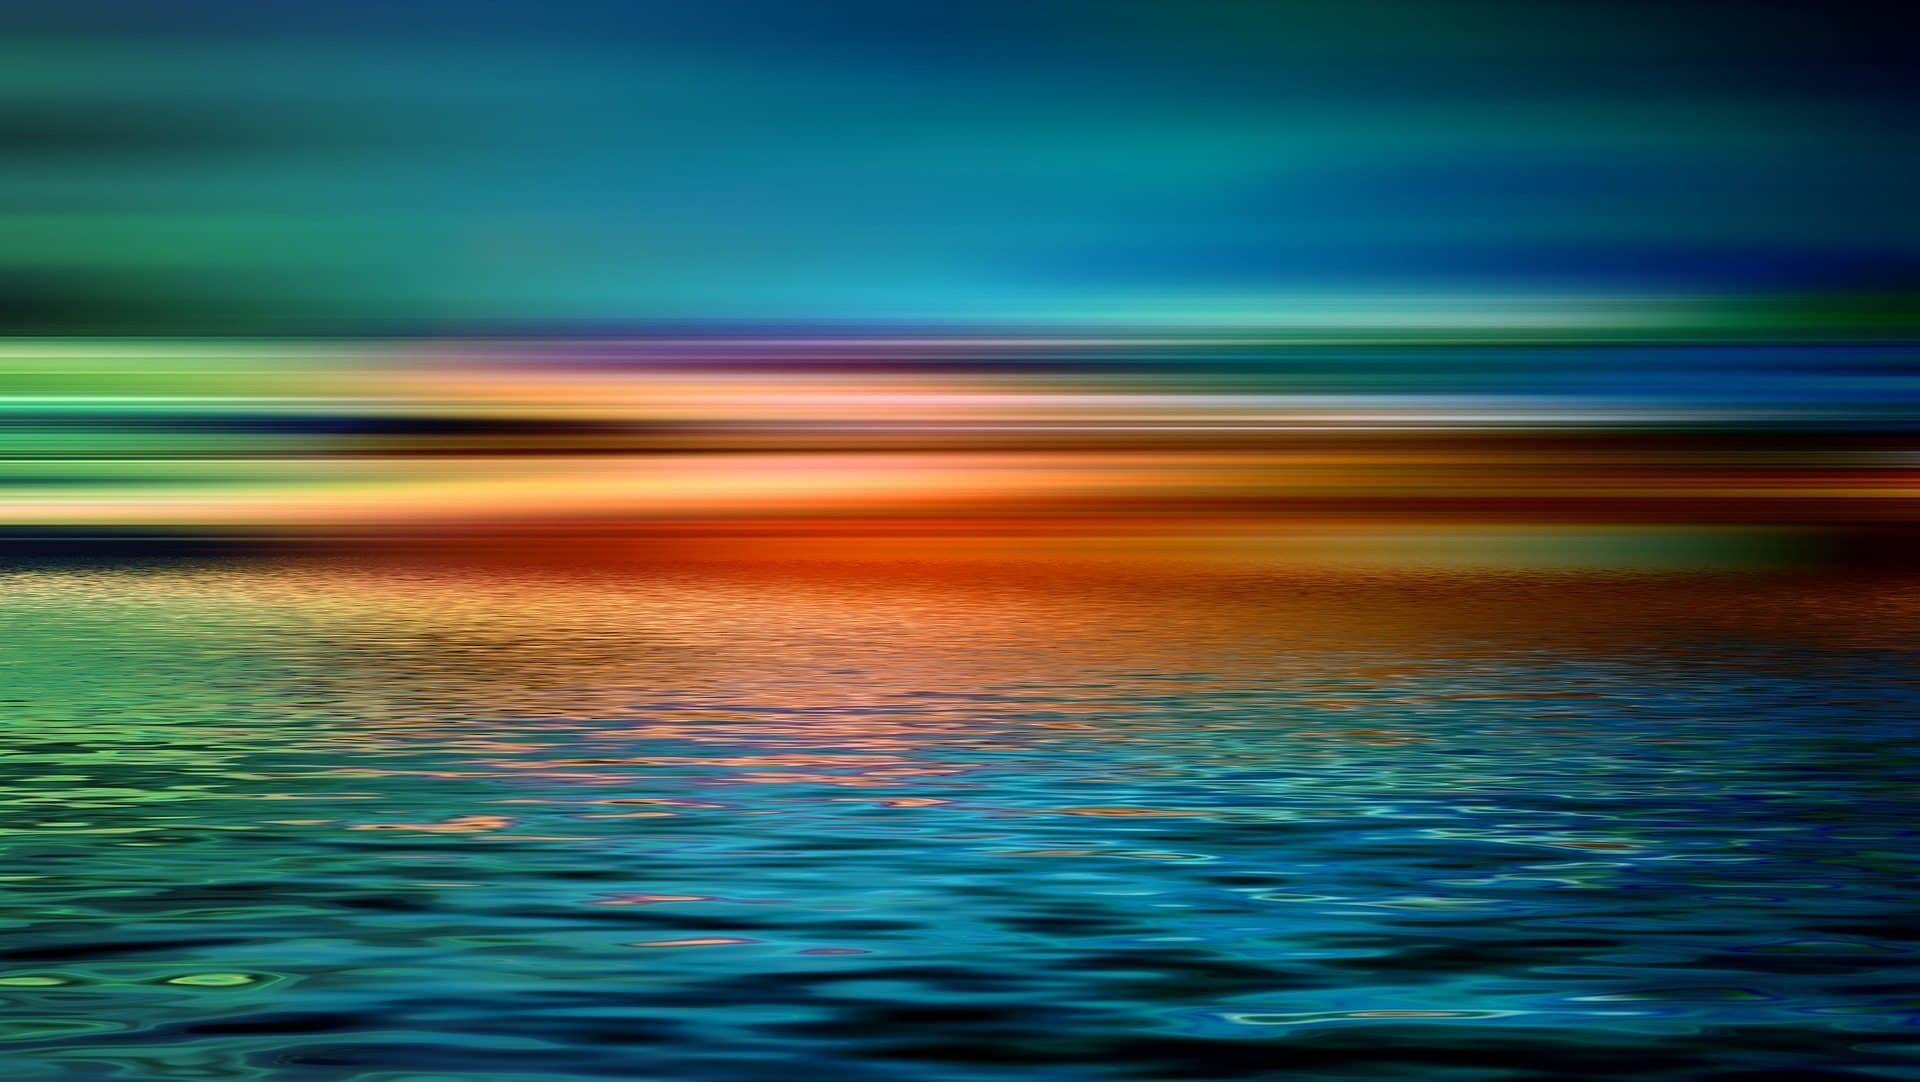 Image: Horizon over a still ocean